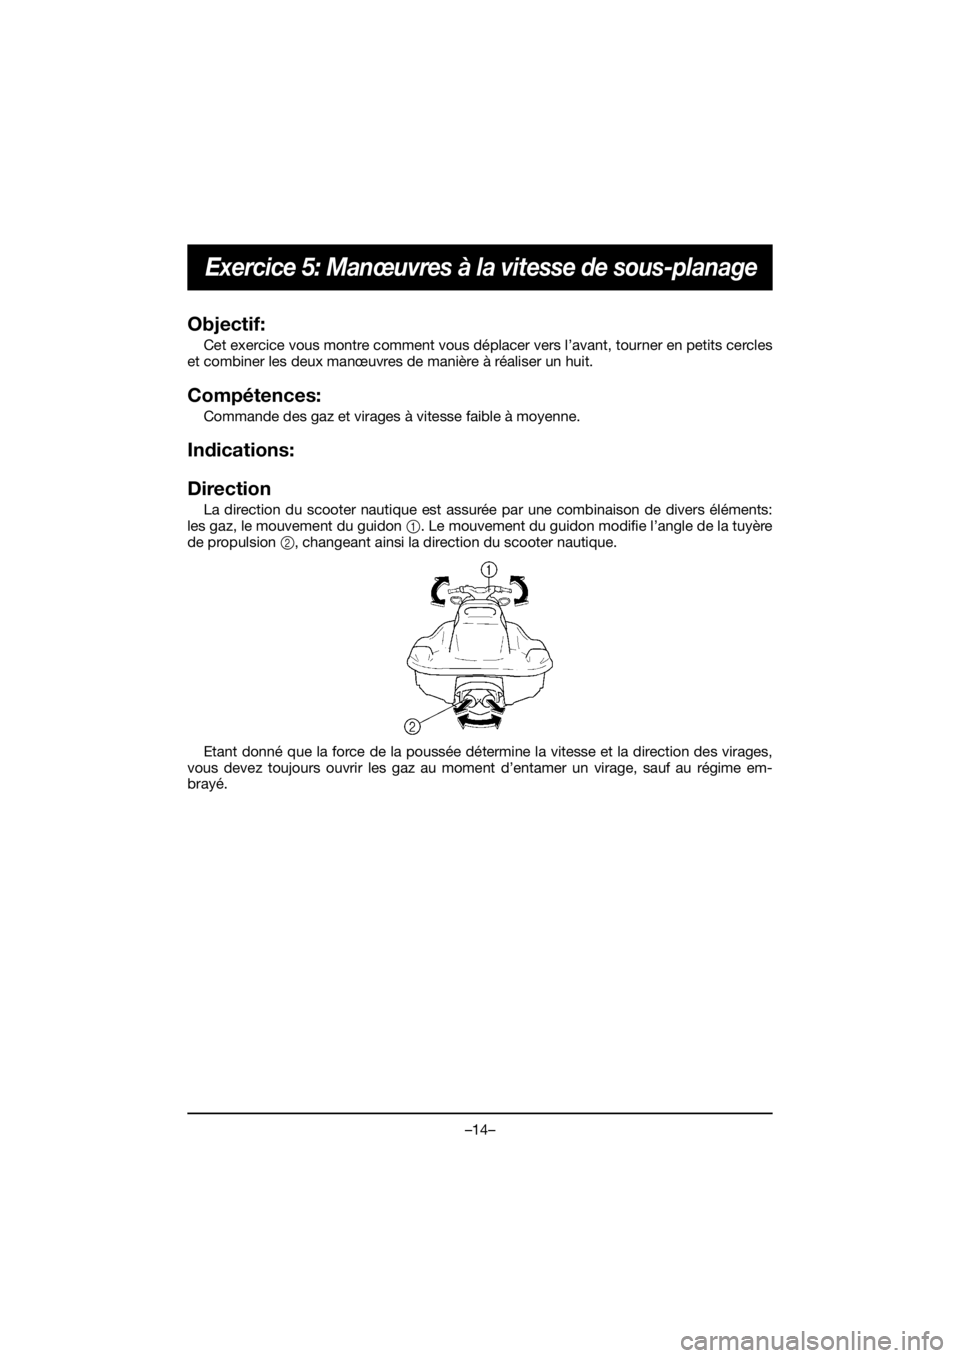 YAMAHA EX 2019  Manuale de Empleo (in Spanish) –14–
Exercice 5: Manœuvres à la vitesse de sous-planage
Objectif: 
Cet exercice vous montre comment vous déplacer vers l’avant, tourner en petits cercles
et combiner les deux manœuvres de ma